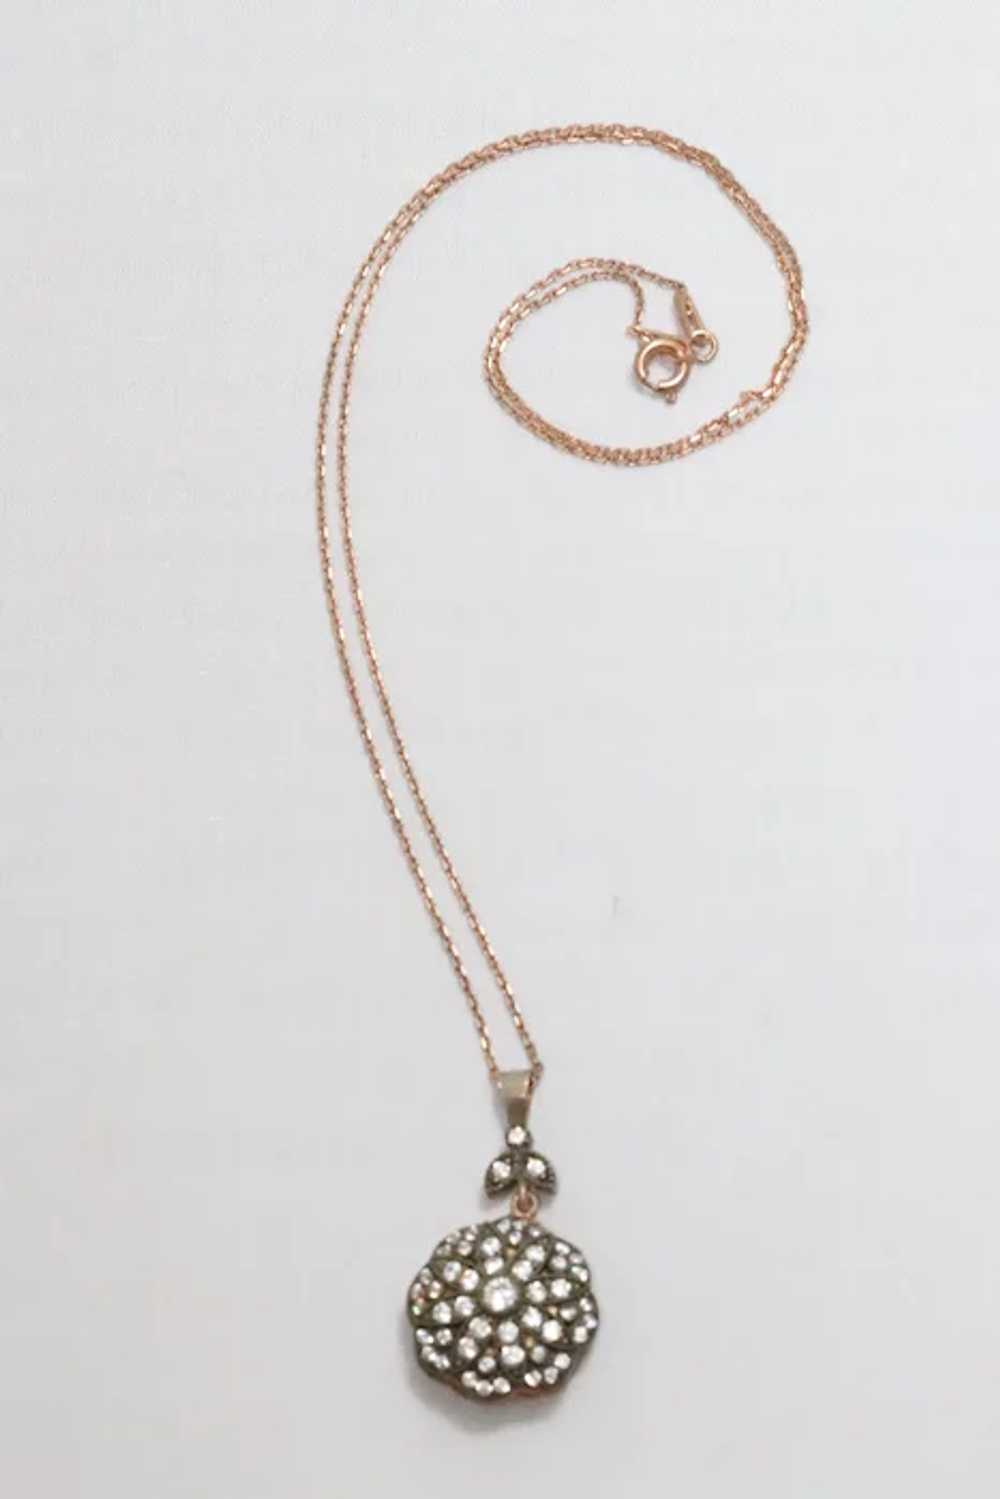 Vintage Sterling Silver Rose Gold Tone Necklace - image 3